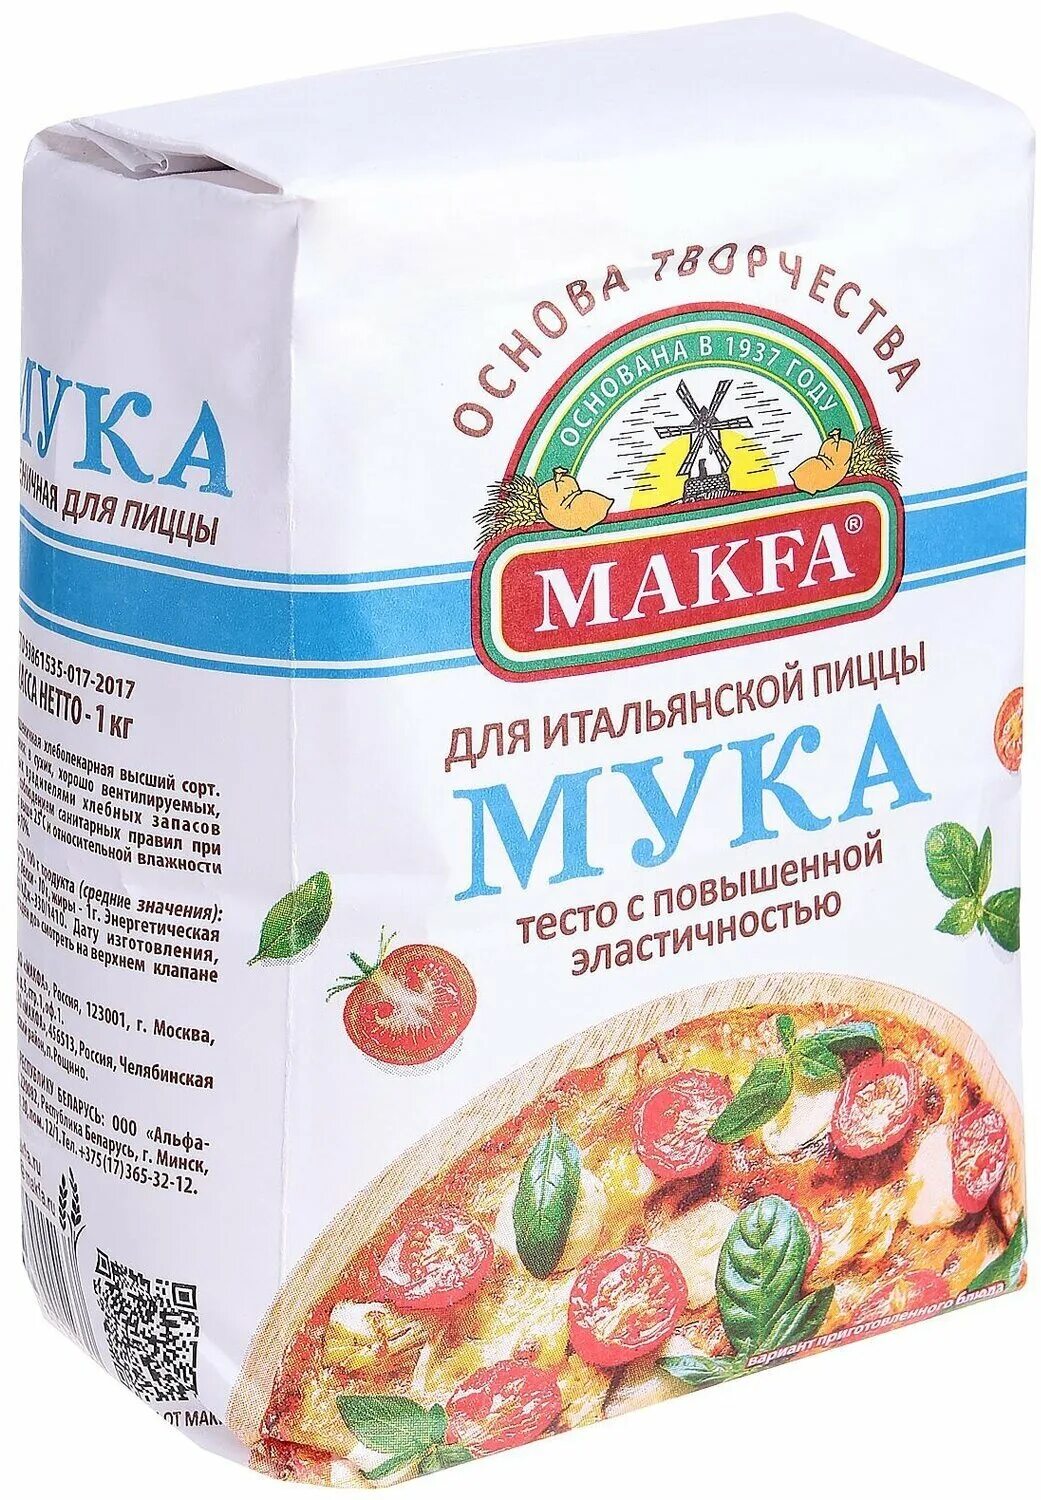 Мука Макфа для пиццы 1кг. Мука makfa для итальянской пиццы 1 кг. Мука для пиццы итальянская. Макфа тесто для пиццы.